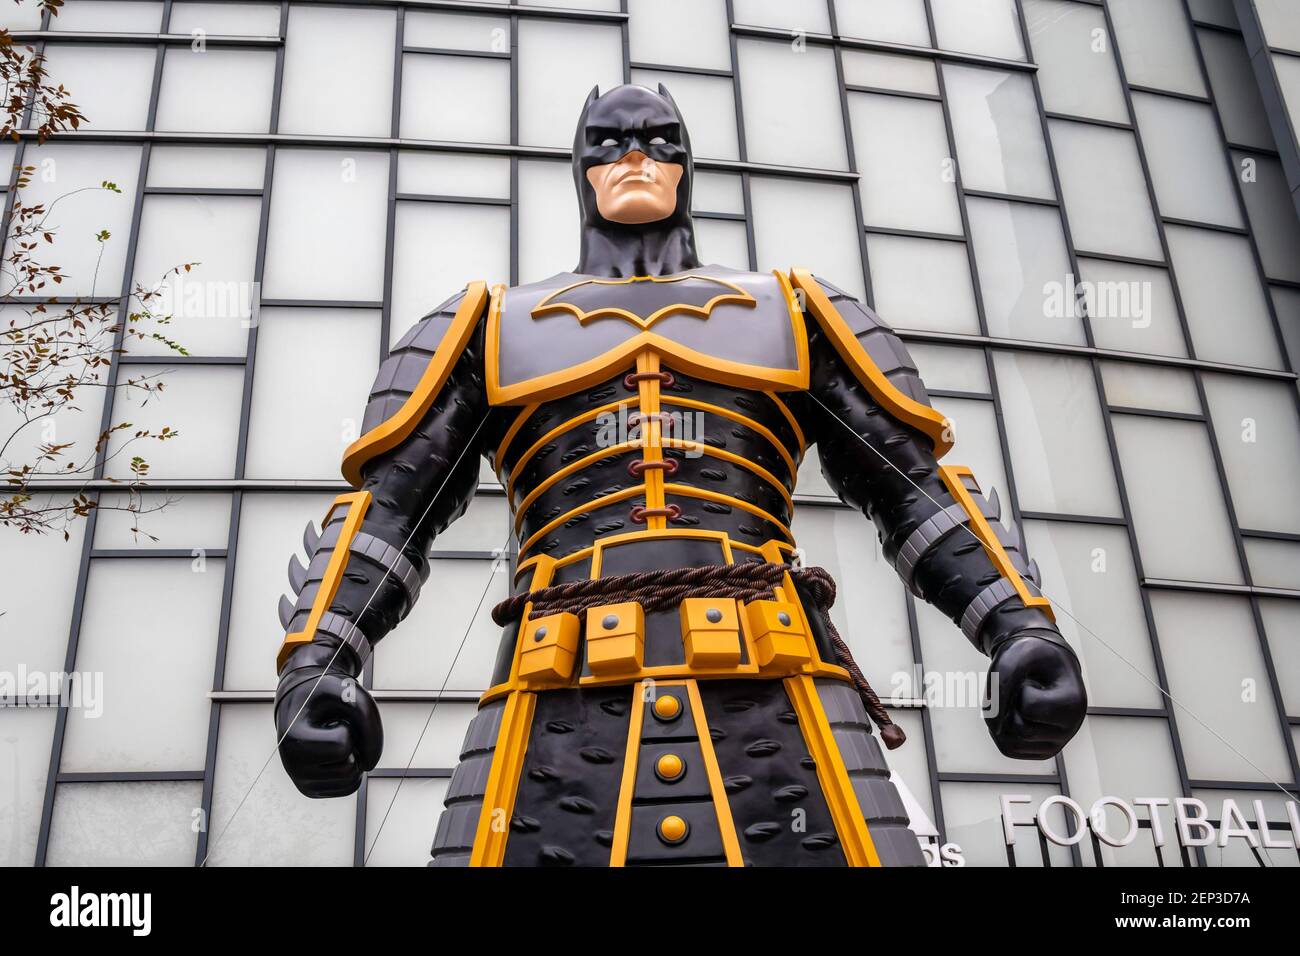 Una escultura de ocho metros de altura del superhéroe ficticio Batman  parece remarcar el 80 aniversario del nacimiento de Batman y llama la  atención de los ciudadanos locales en Shanghai, China, 22